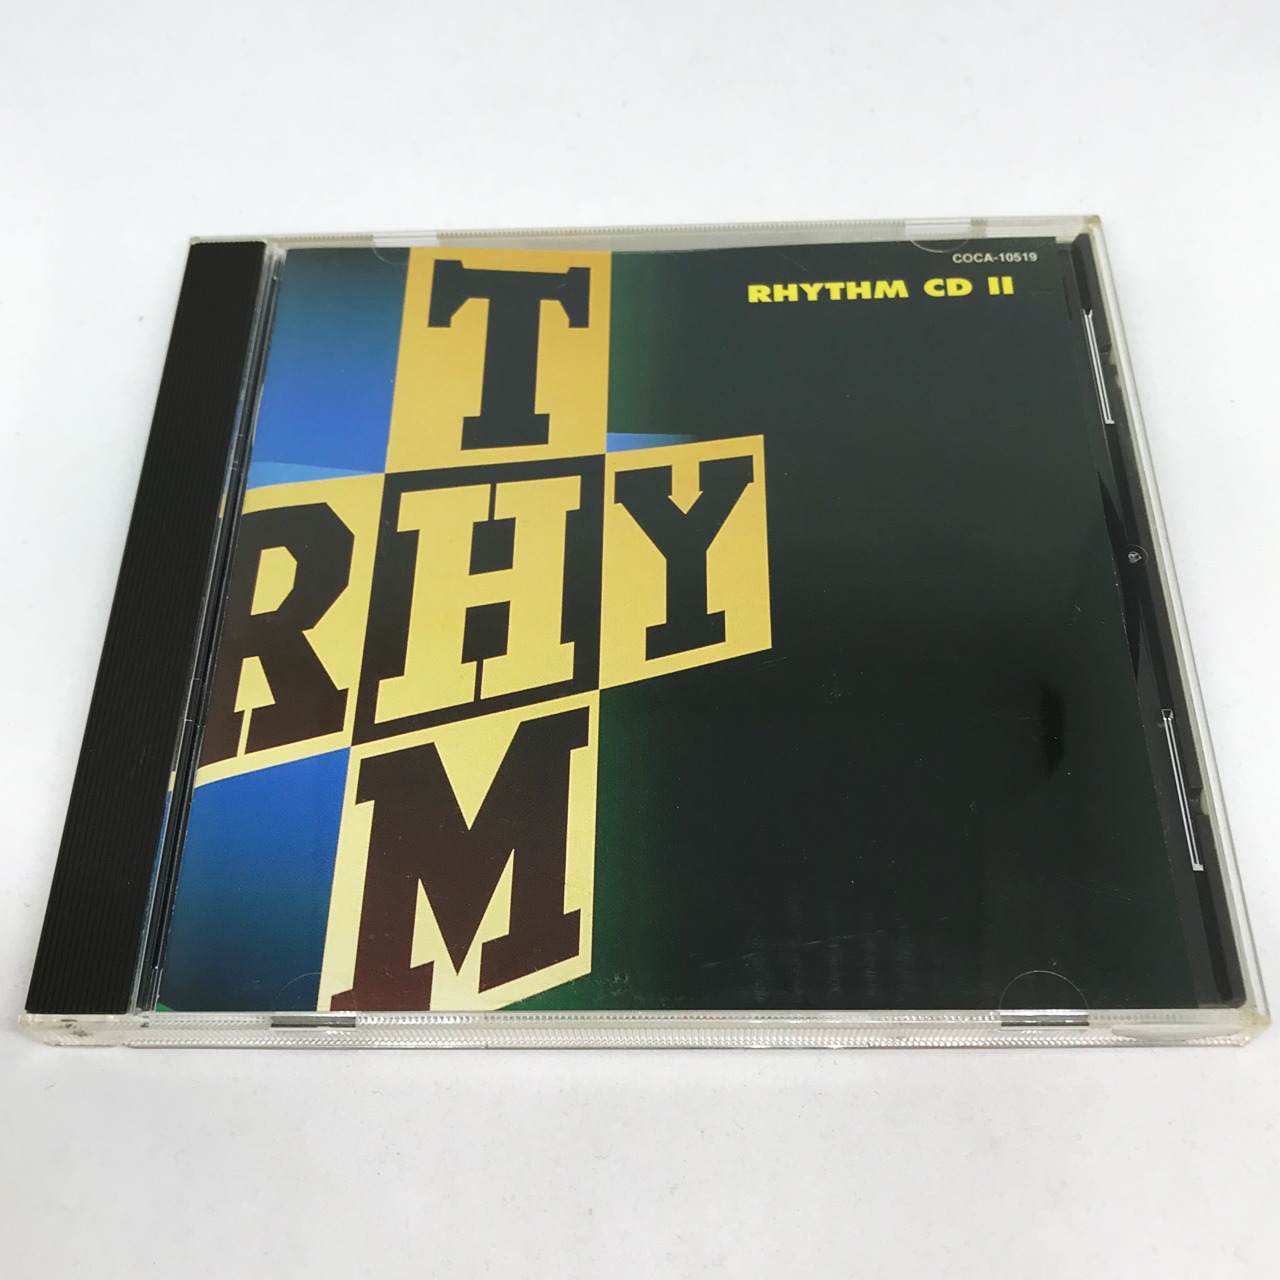 RHYTHM CD 2